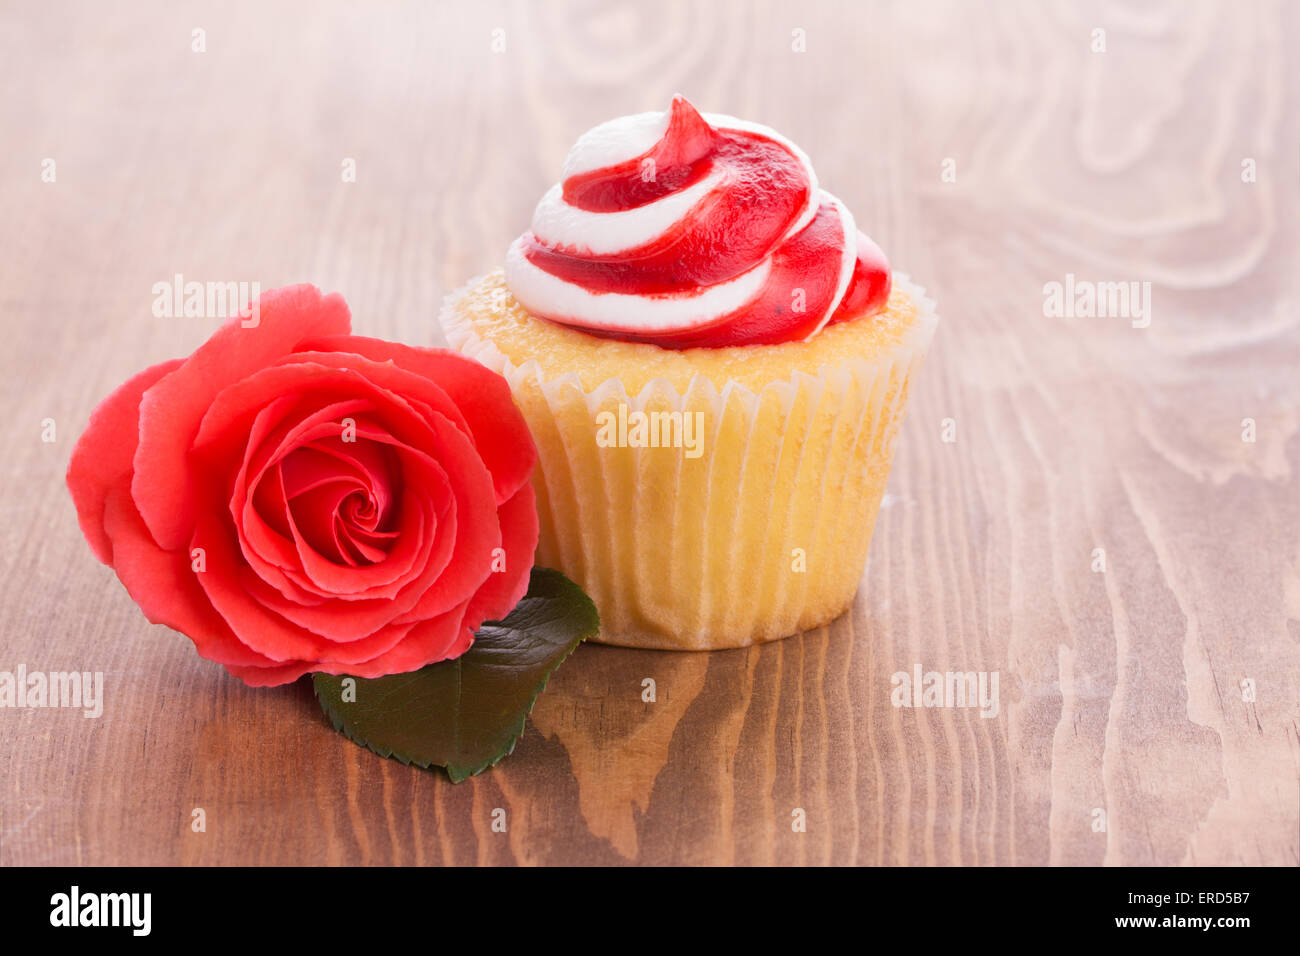 Petit gâteau aux fraises avec une belle rose rouge sur la table en bois, un simple traitement à un être cher Banque D'Images